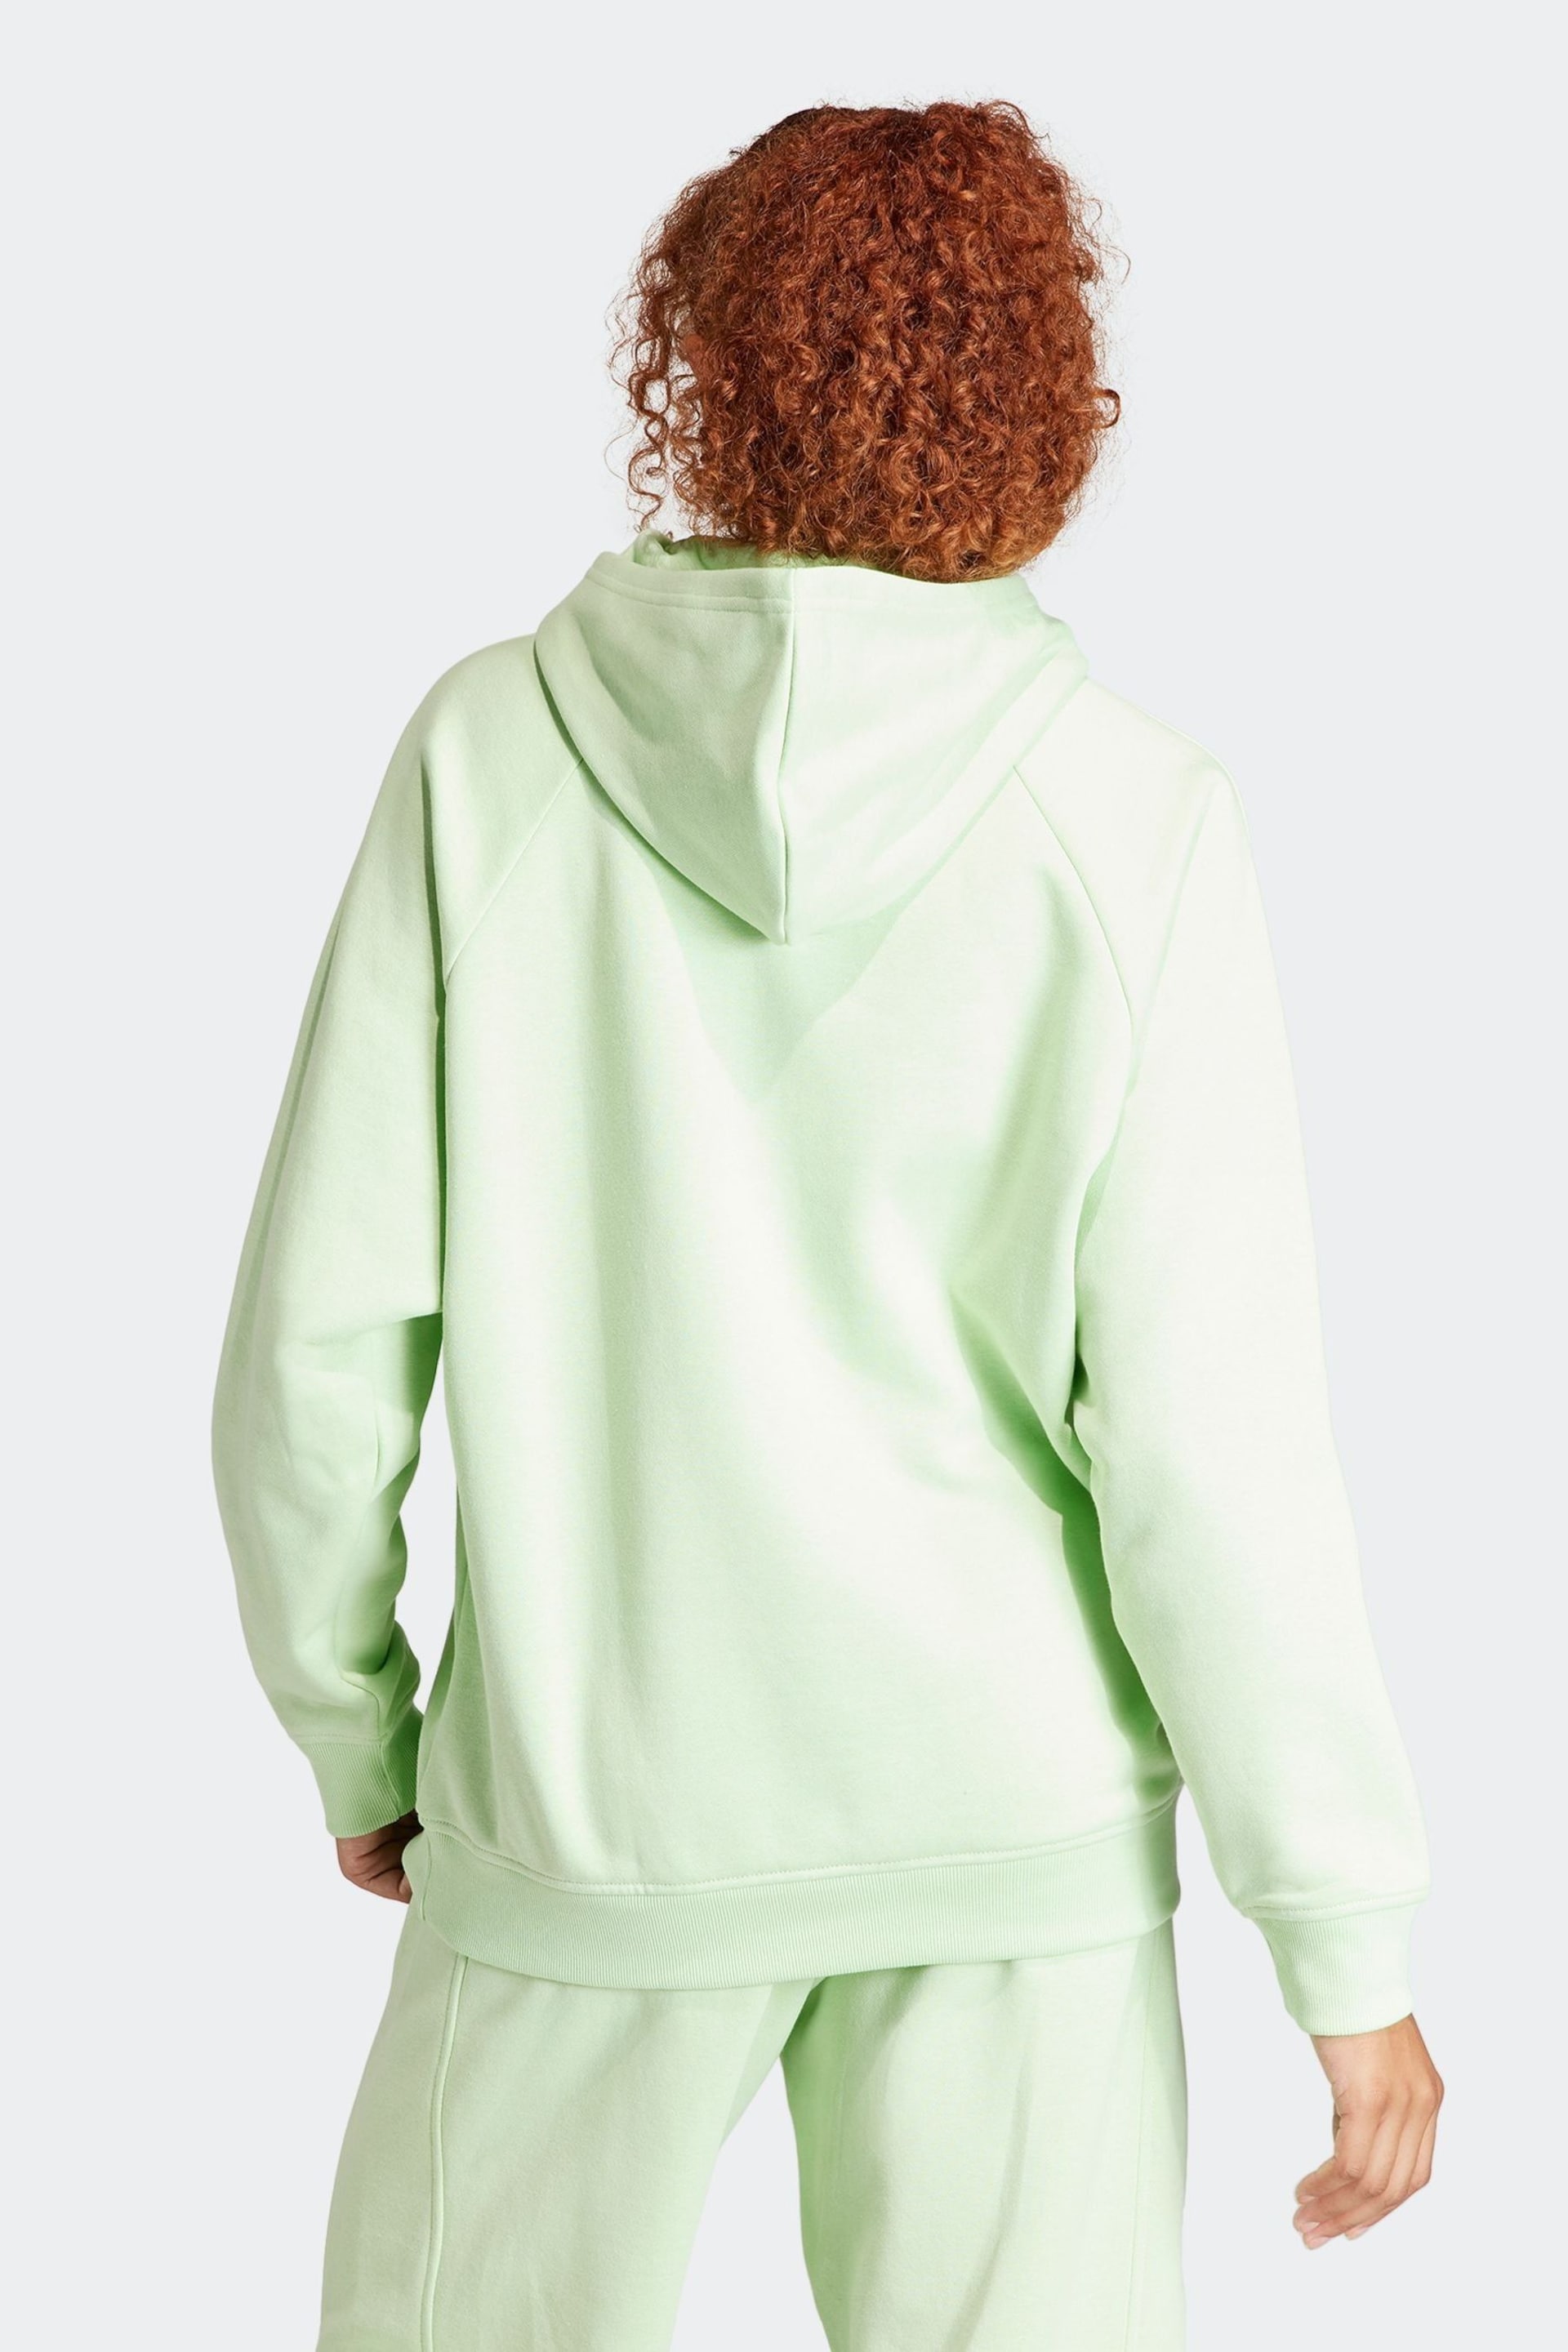 adidas Green Boyfriend Sportswear All Szn Fleece Hoodie - Image 2 of 7